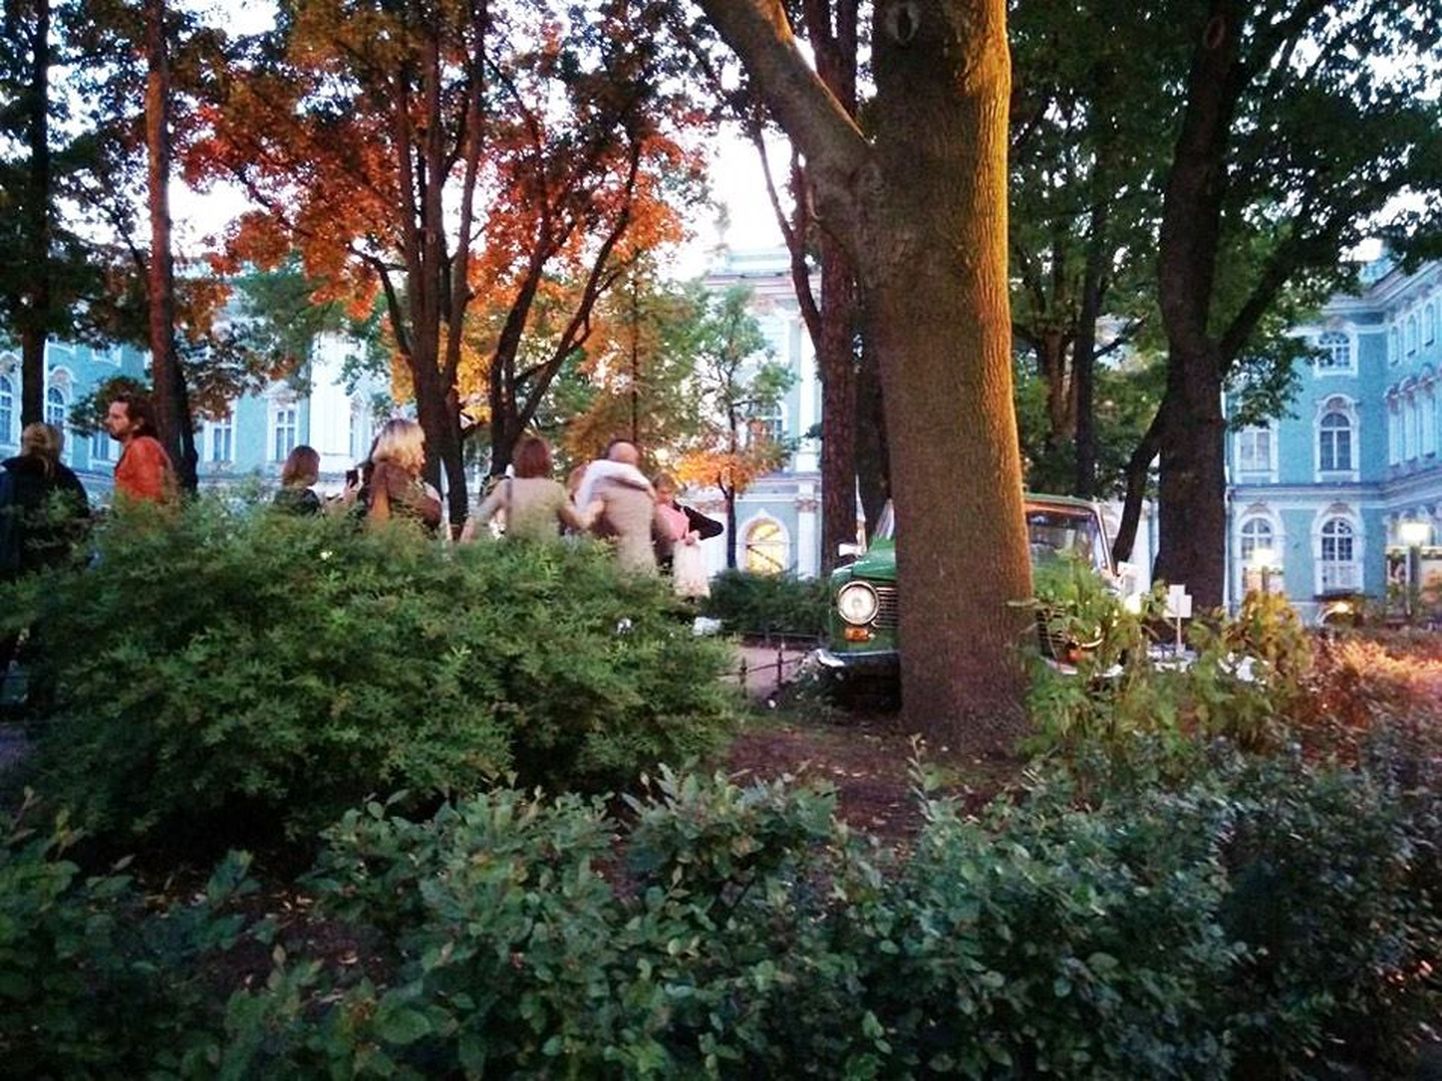 Francis Alyse mälestusteauto on sõitnud Ermitaaži aias vastu puud. Nii jääb. Rõõmus sagin auto ümber on osa Manifesta avamispeost.